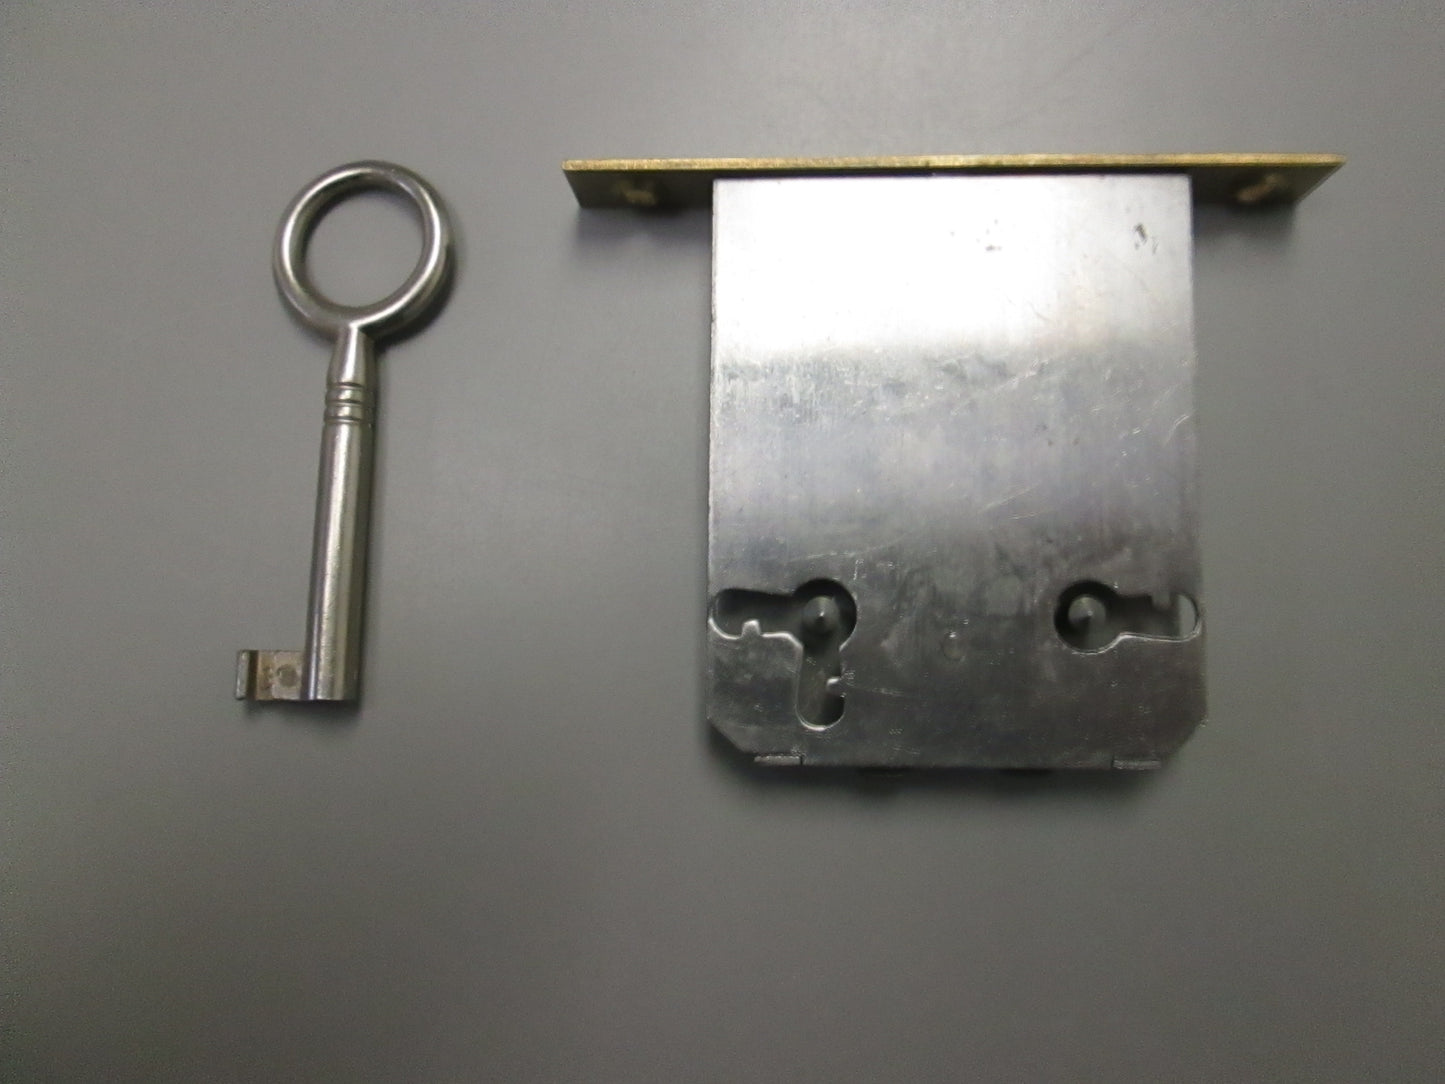 DiMark MS 662/50 Full Mortise Drawer Lock